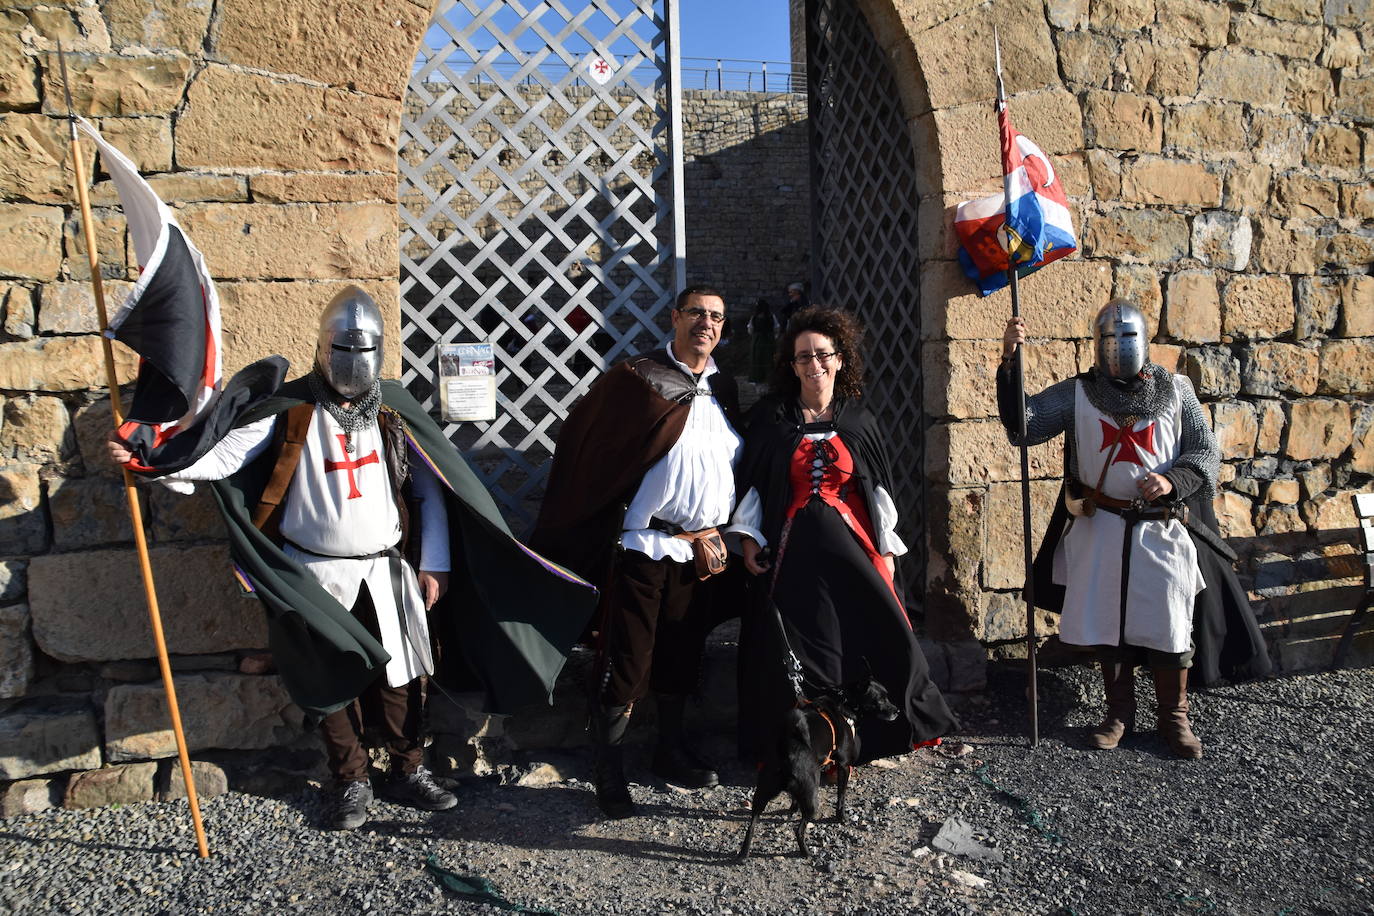 La inauguración de las XIV jornadas de artesanía medieval de Cornago, este sábado, fue un éxito